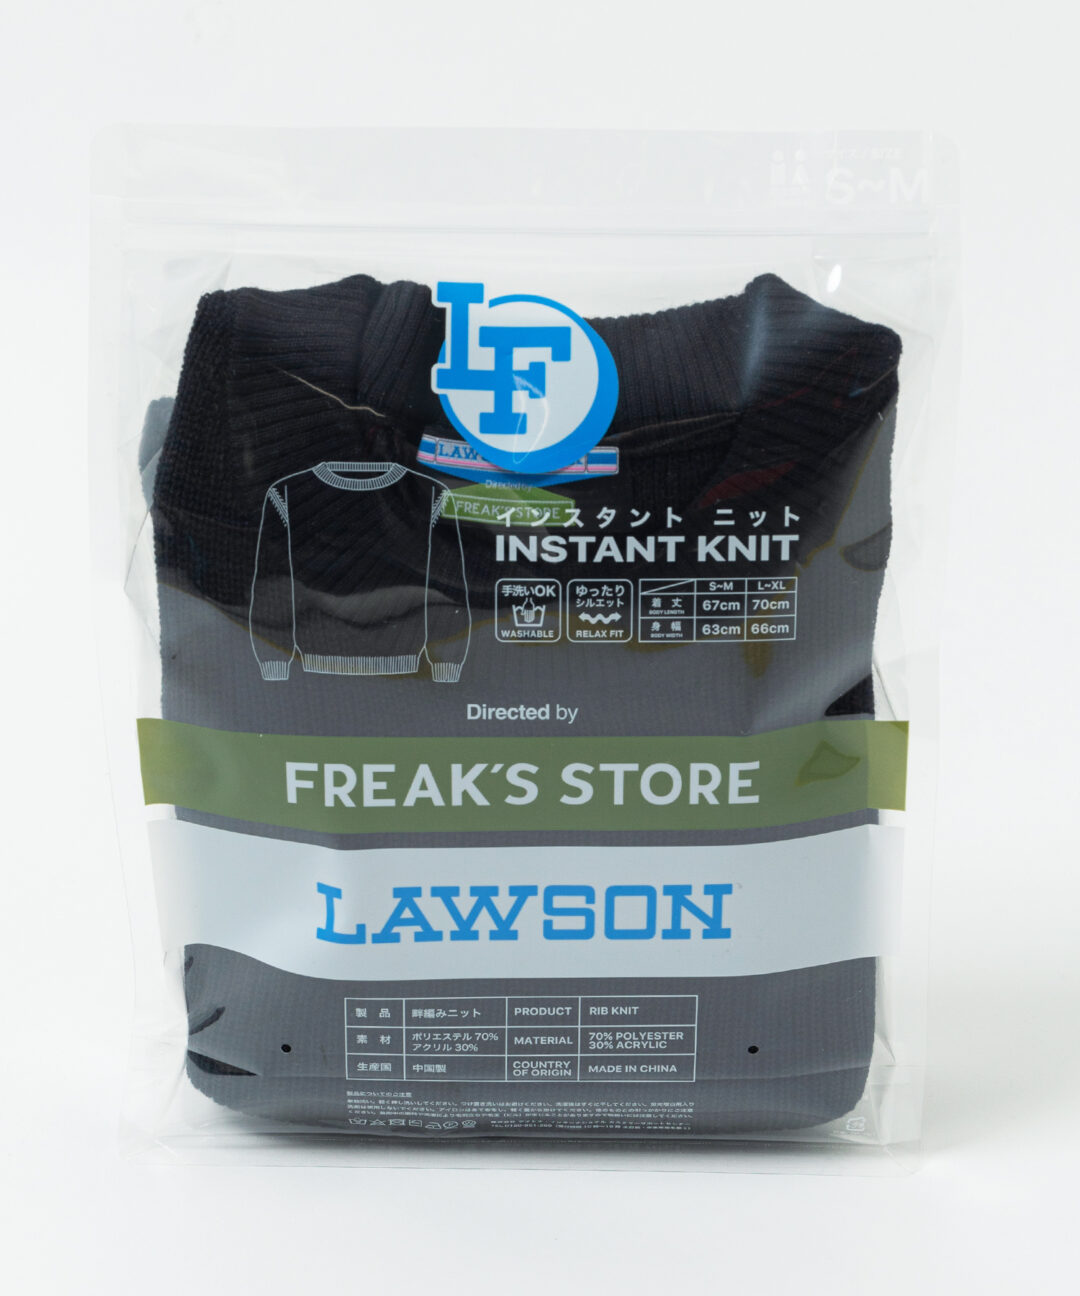 あなたのマチのホットステーション「ローソン」× FREAK’S STORE コラボアイテム「LAWSON FREAK」が発売 (フリークスストア)